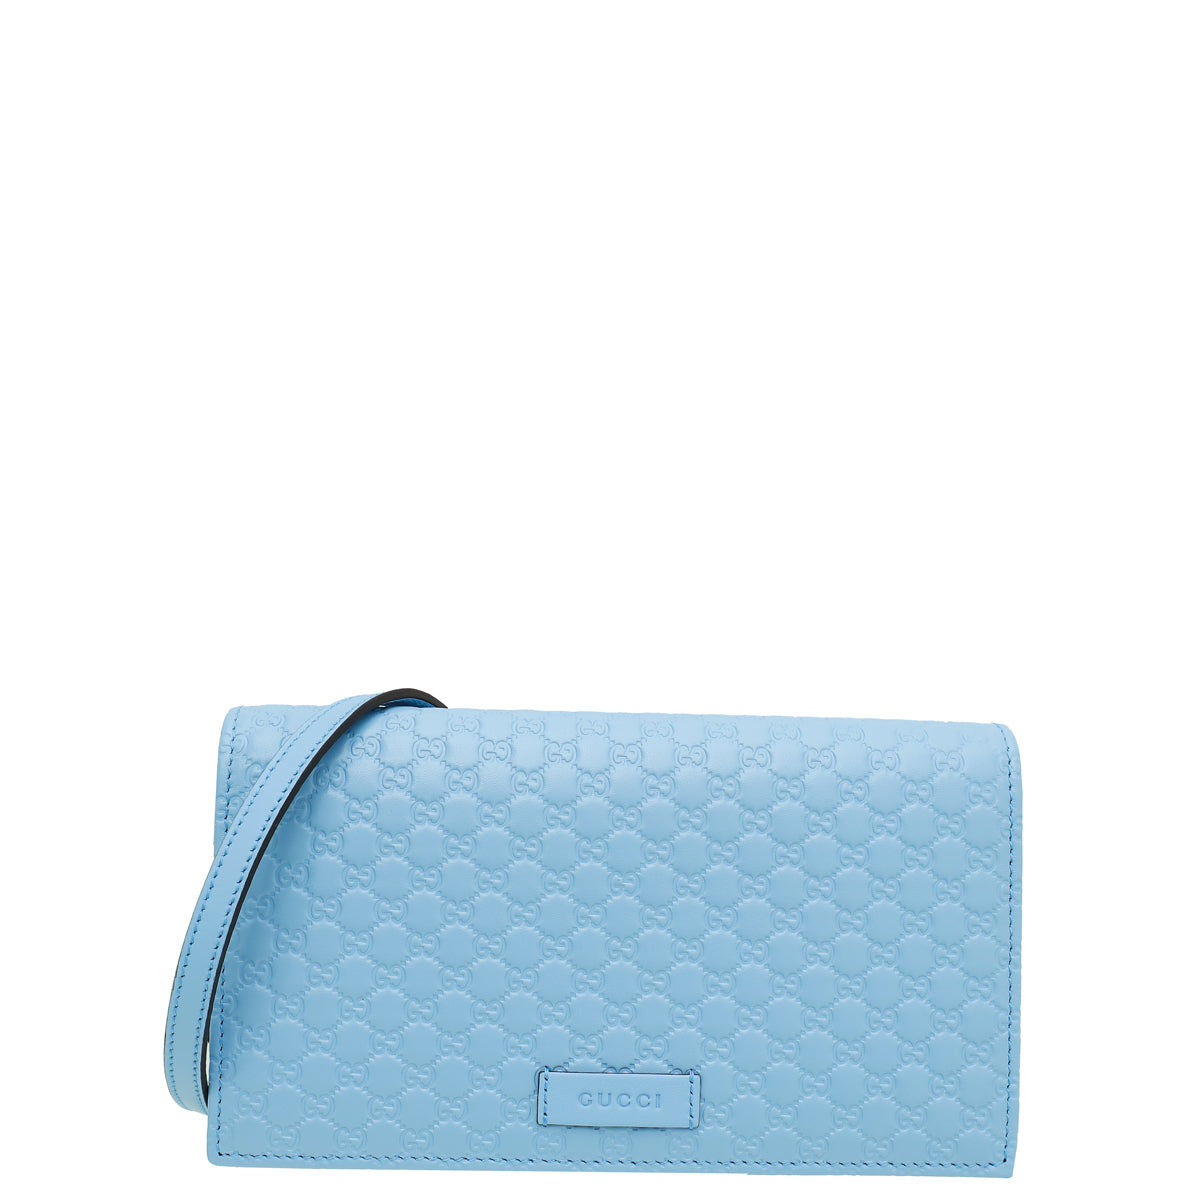 Gucci Light Blue GG Microguccissima Strap Wallet